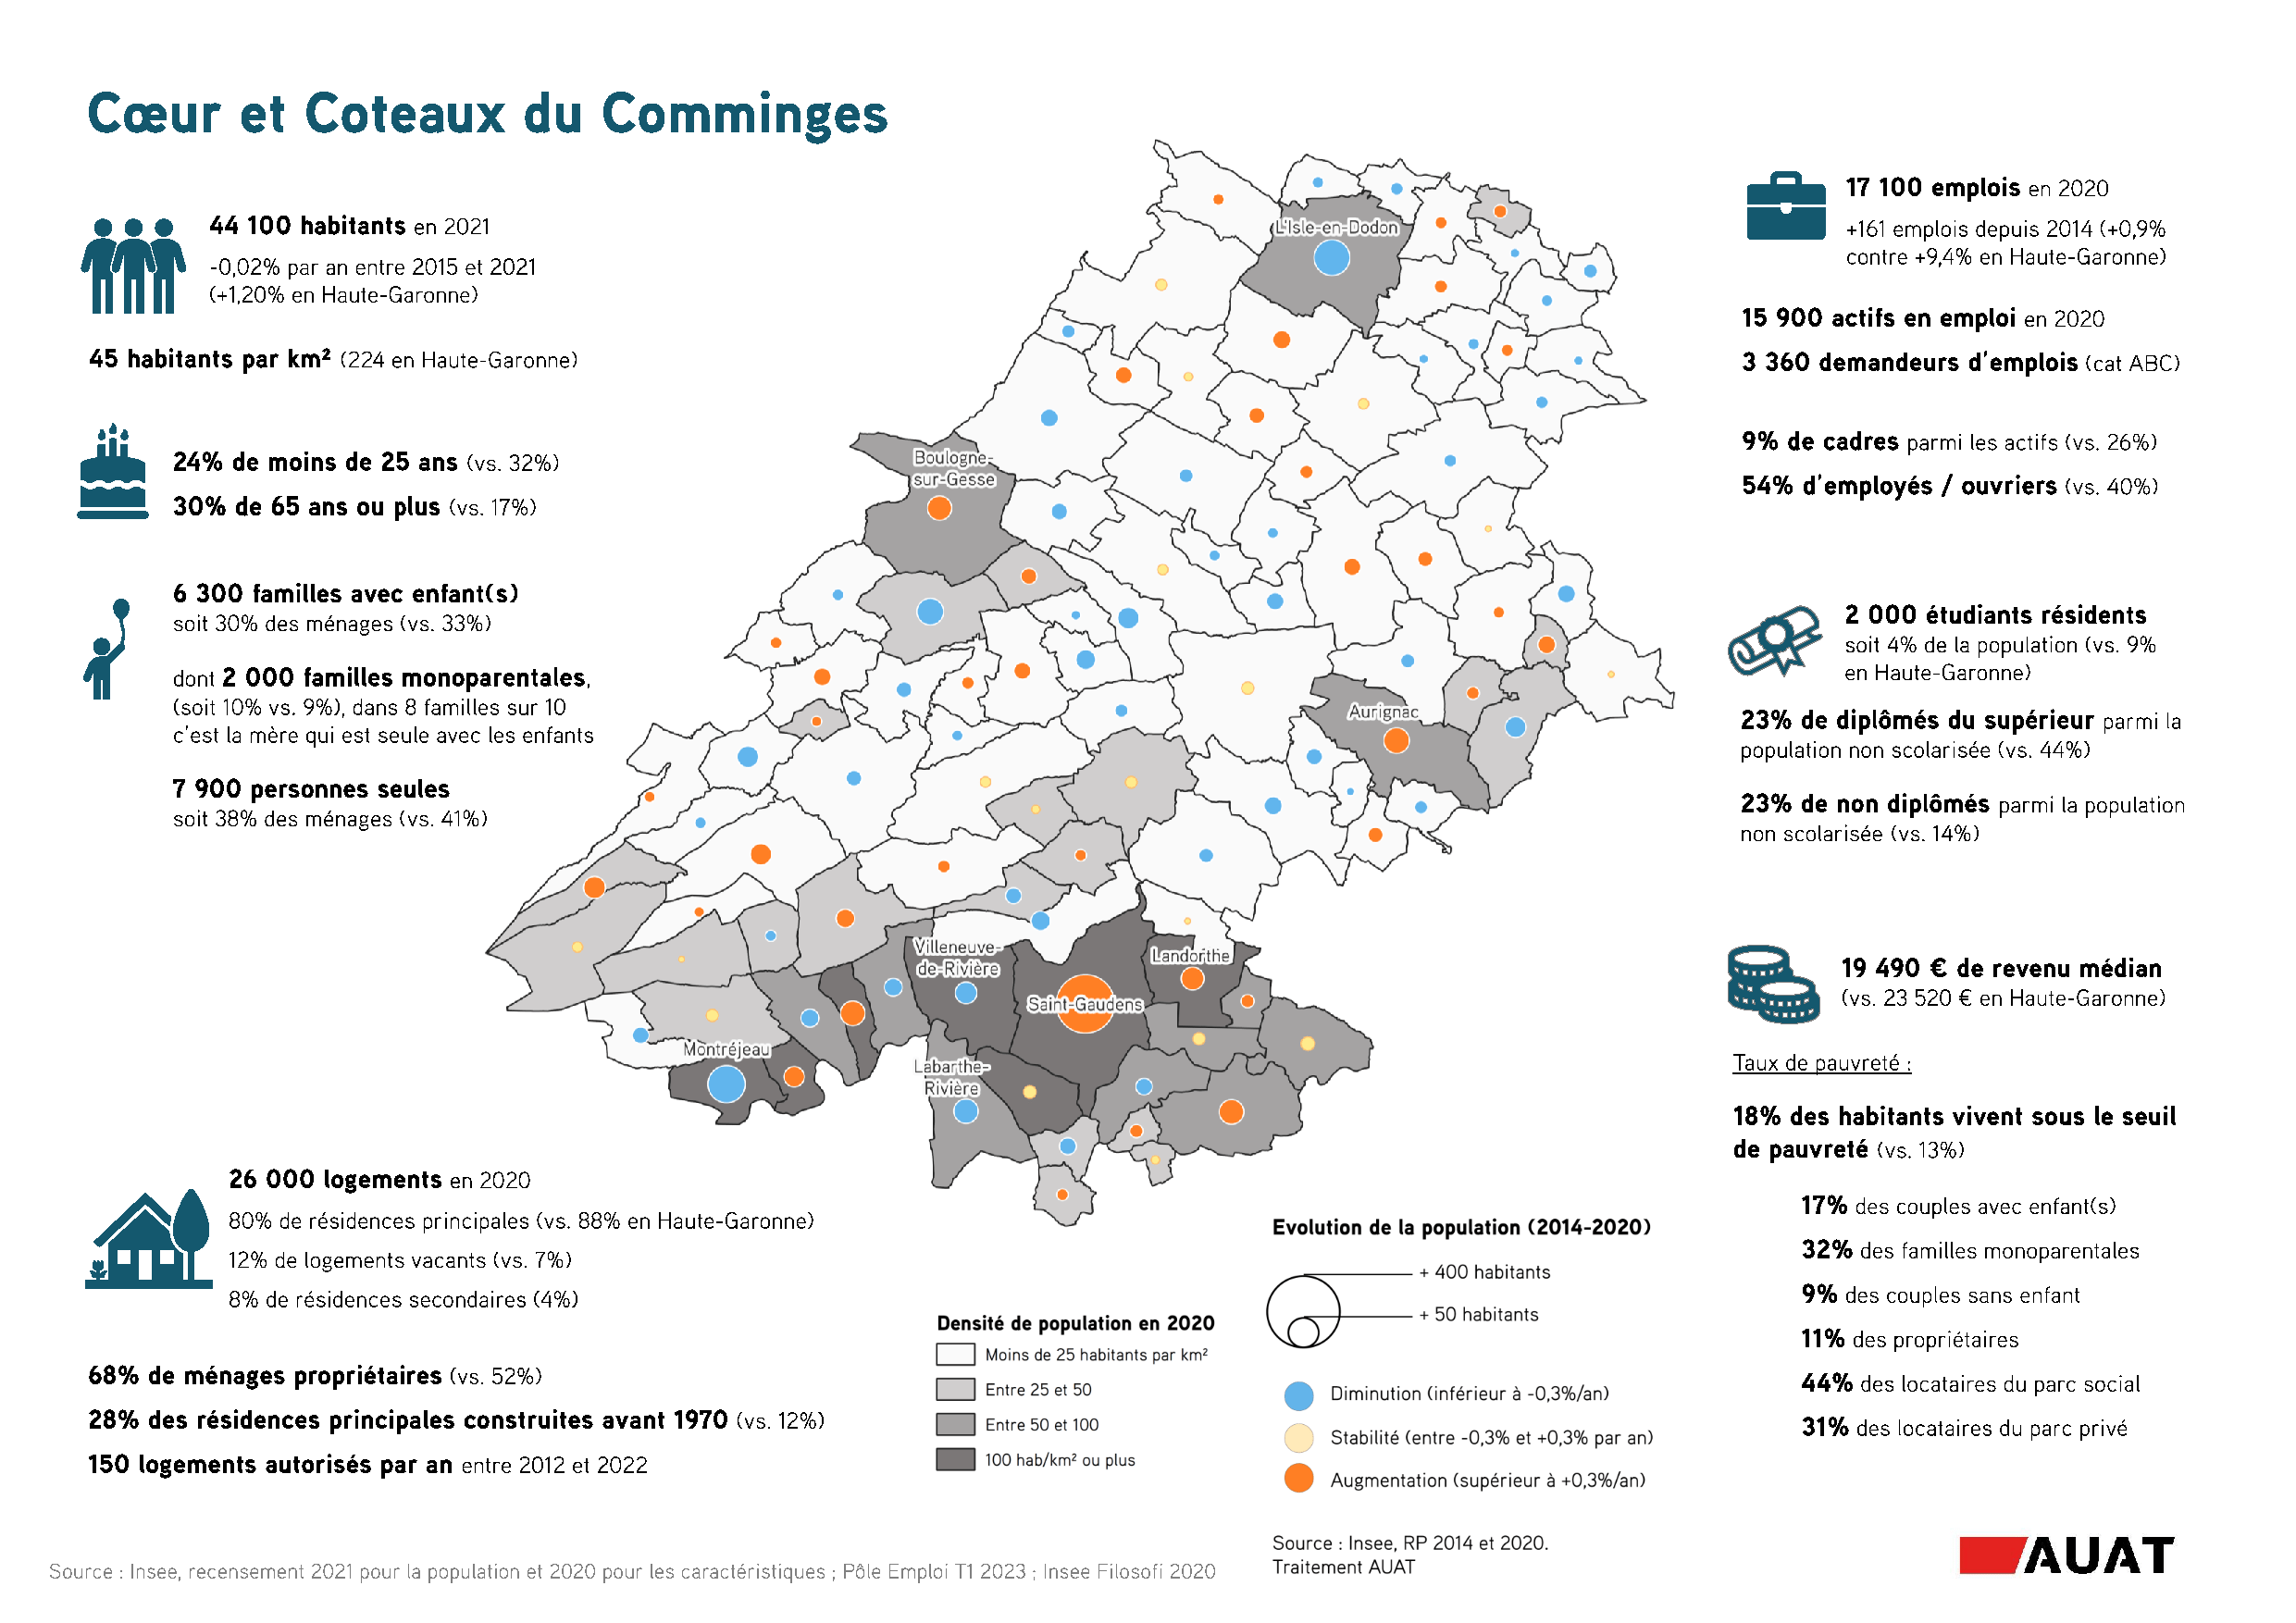 Cartographie et chiffres clés sur la démographie de la Communauté de communes Cœur et Coteaux du Comminges